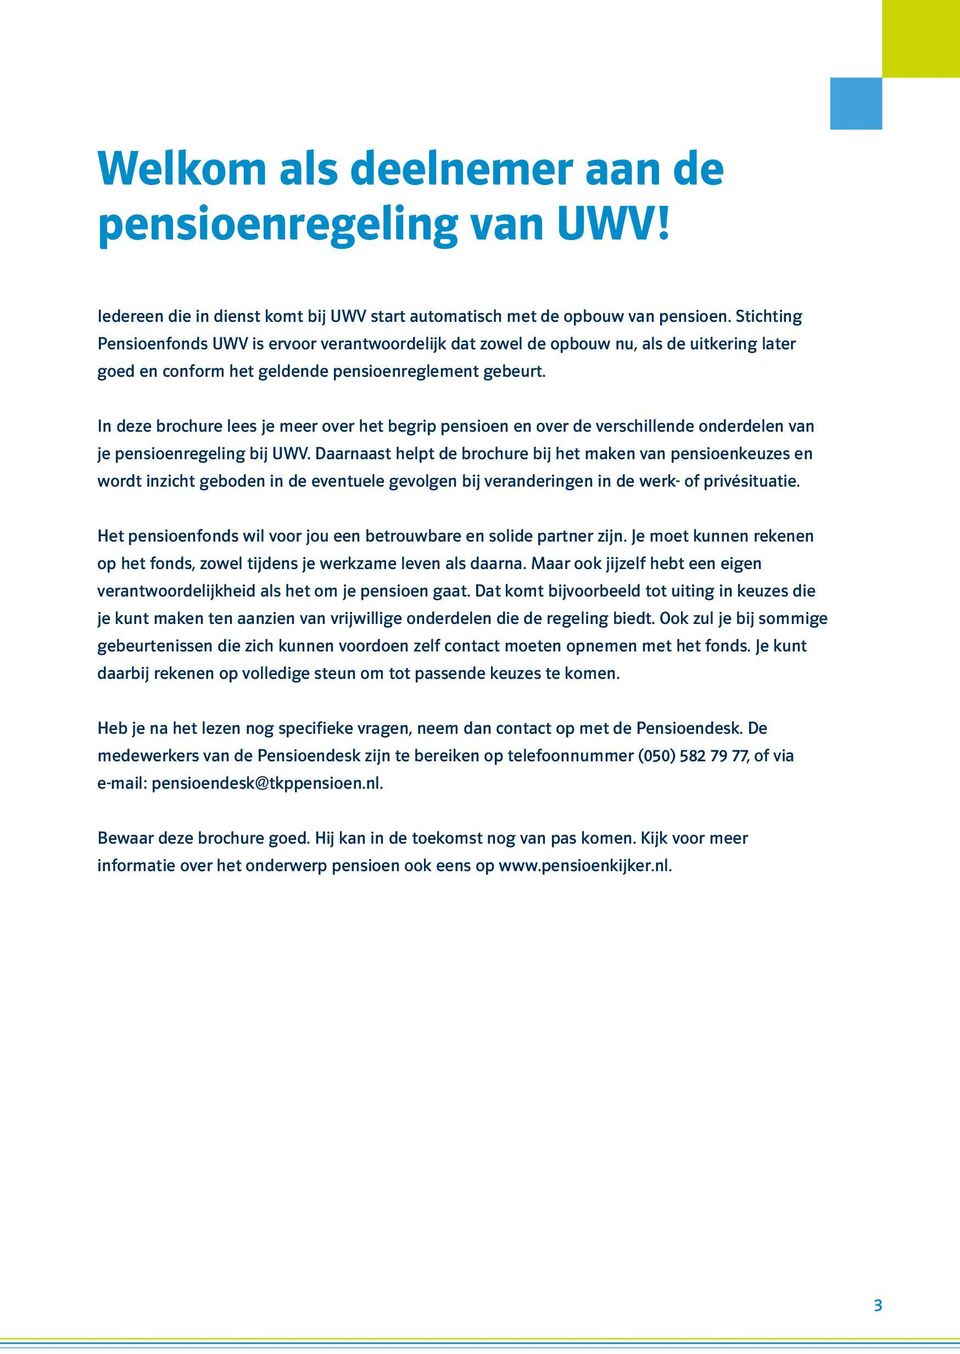 In deze brochure lees je meer over het begrip pensioen en over de verschillende onderdelen van je pensioenregeling bij UWV.